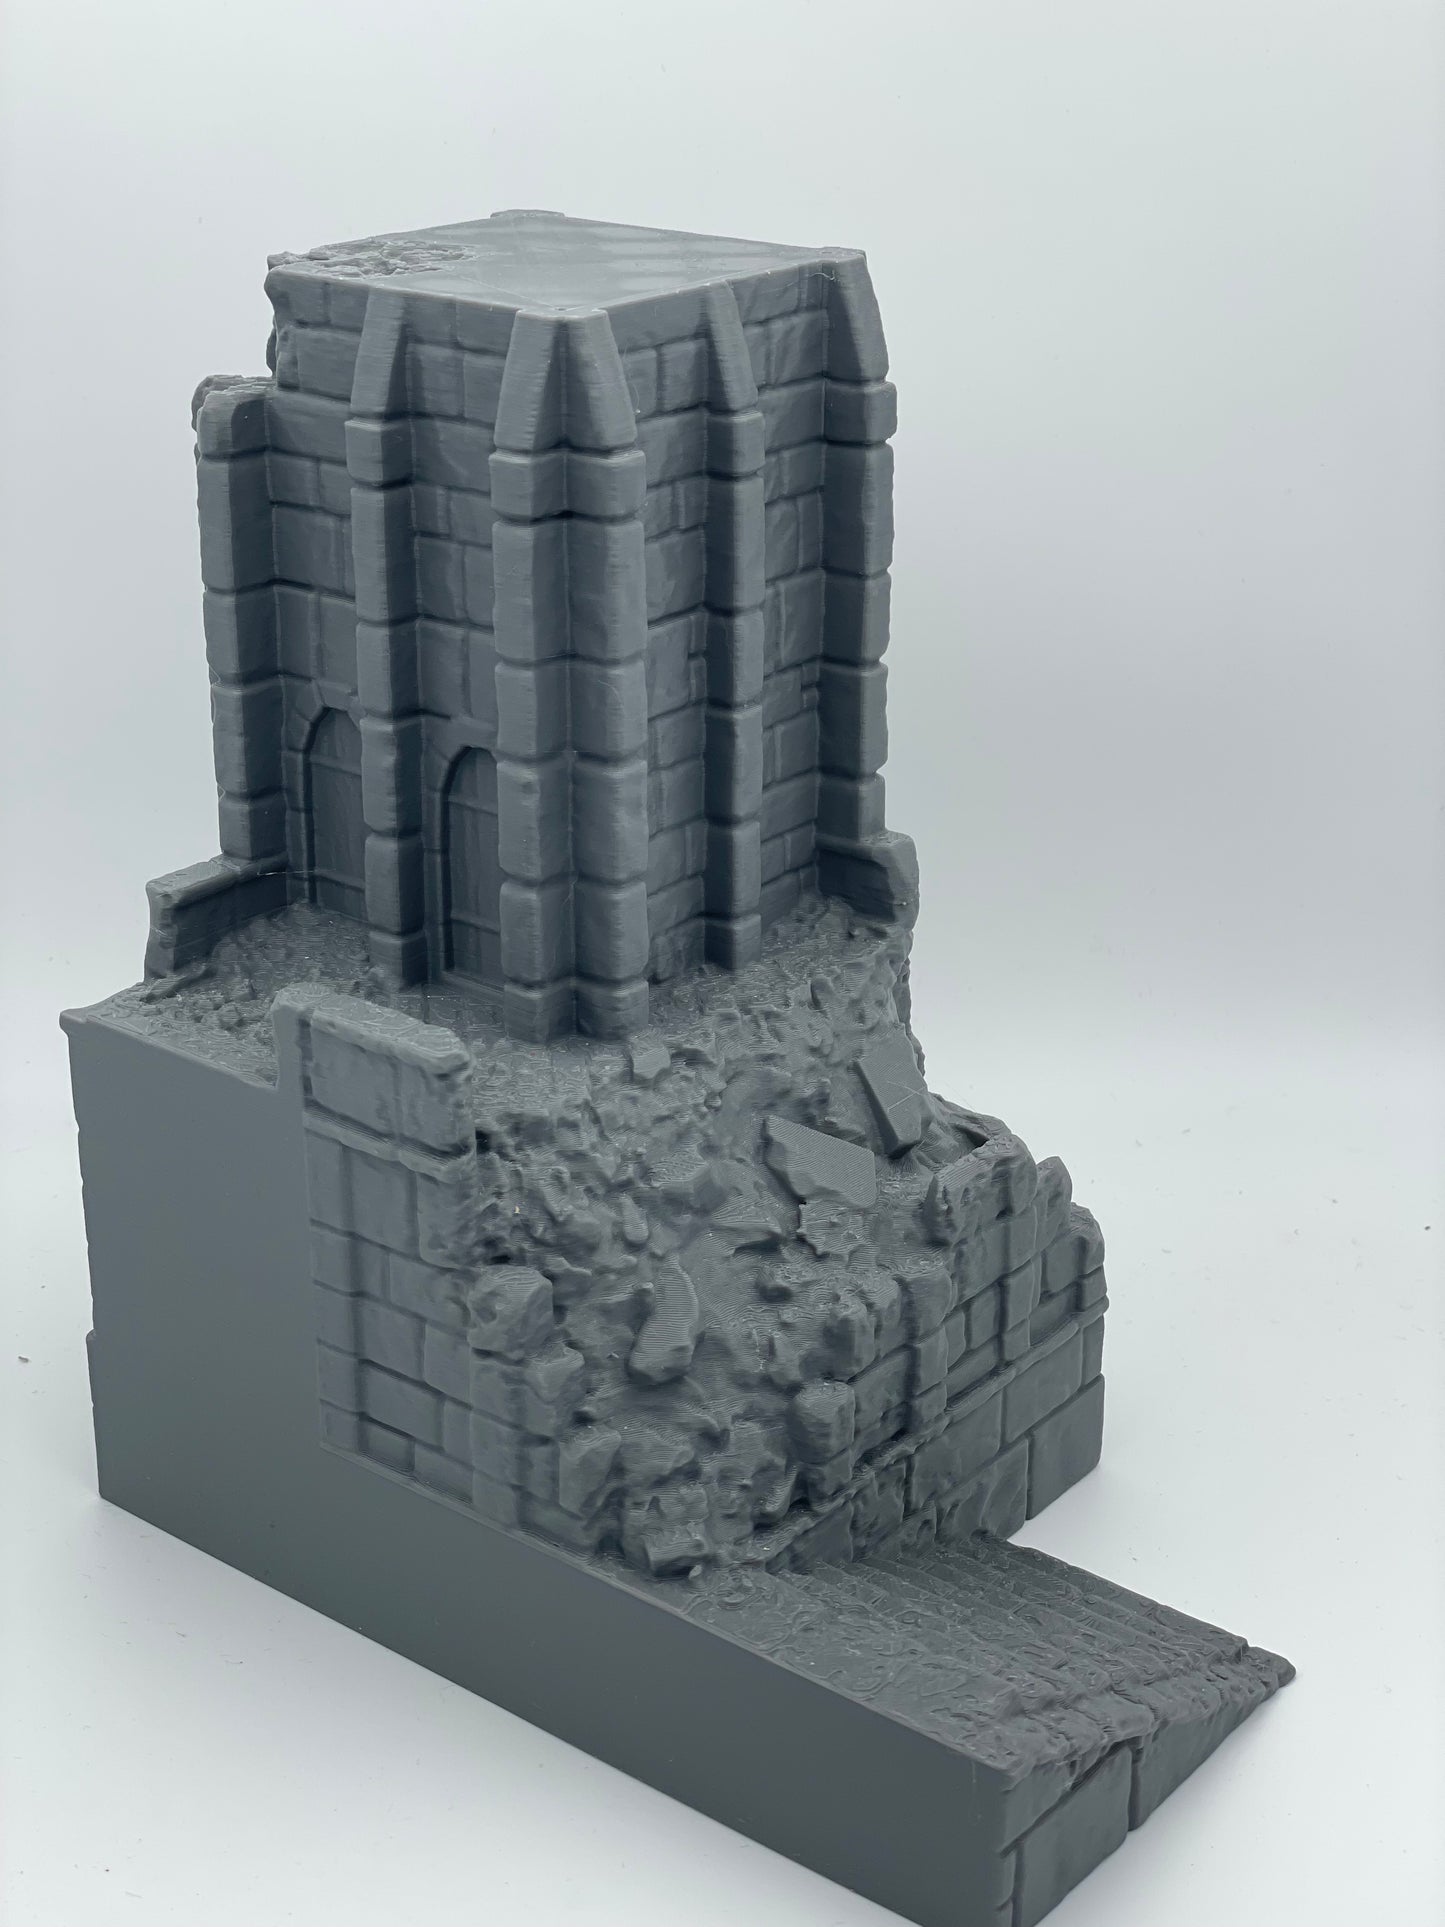 Produktfoto Tabletop 28mm The Printing Goes Ever On (TPGEO)  0: Ruine mittelalterlicher Turm - Überreste militärisches Gebäude - Zerstörter Außenposten